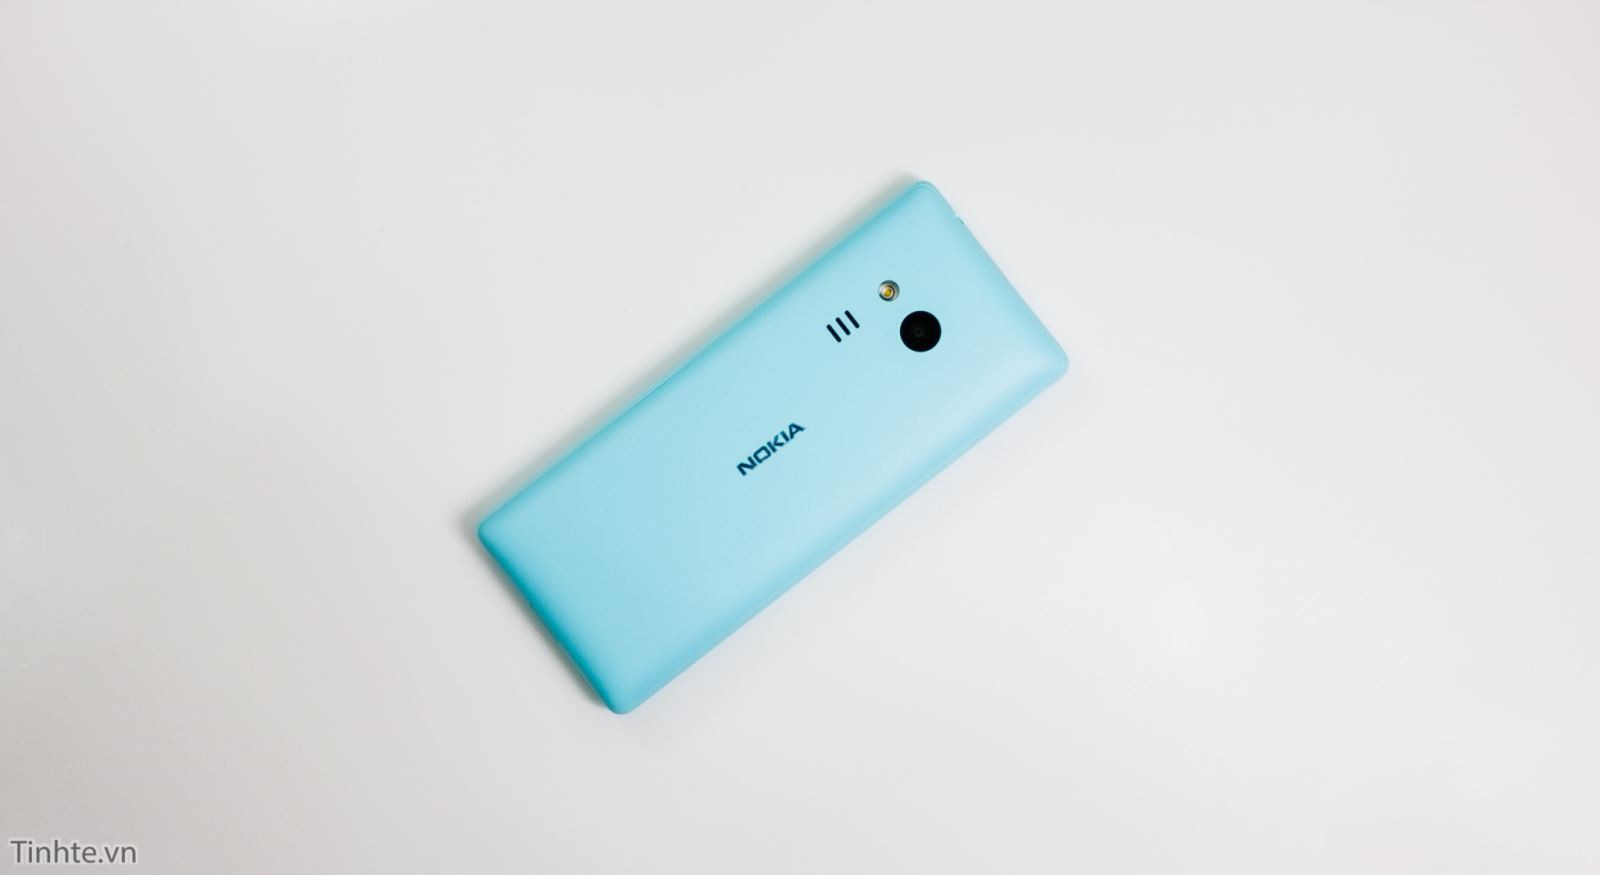 Cận cảnh chiếc Nokia 216 phiên bản màu xanh tuyệt đẹp 6